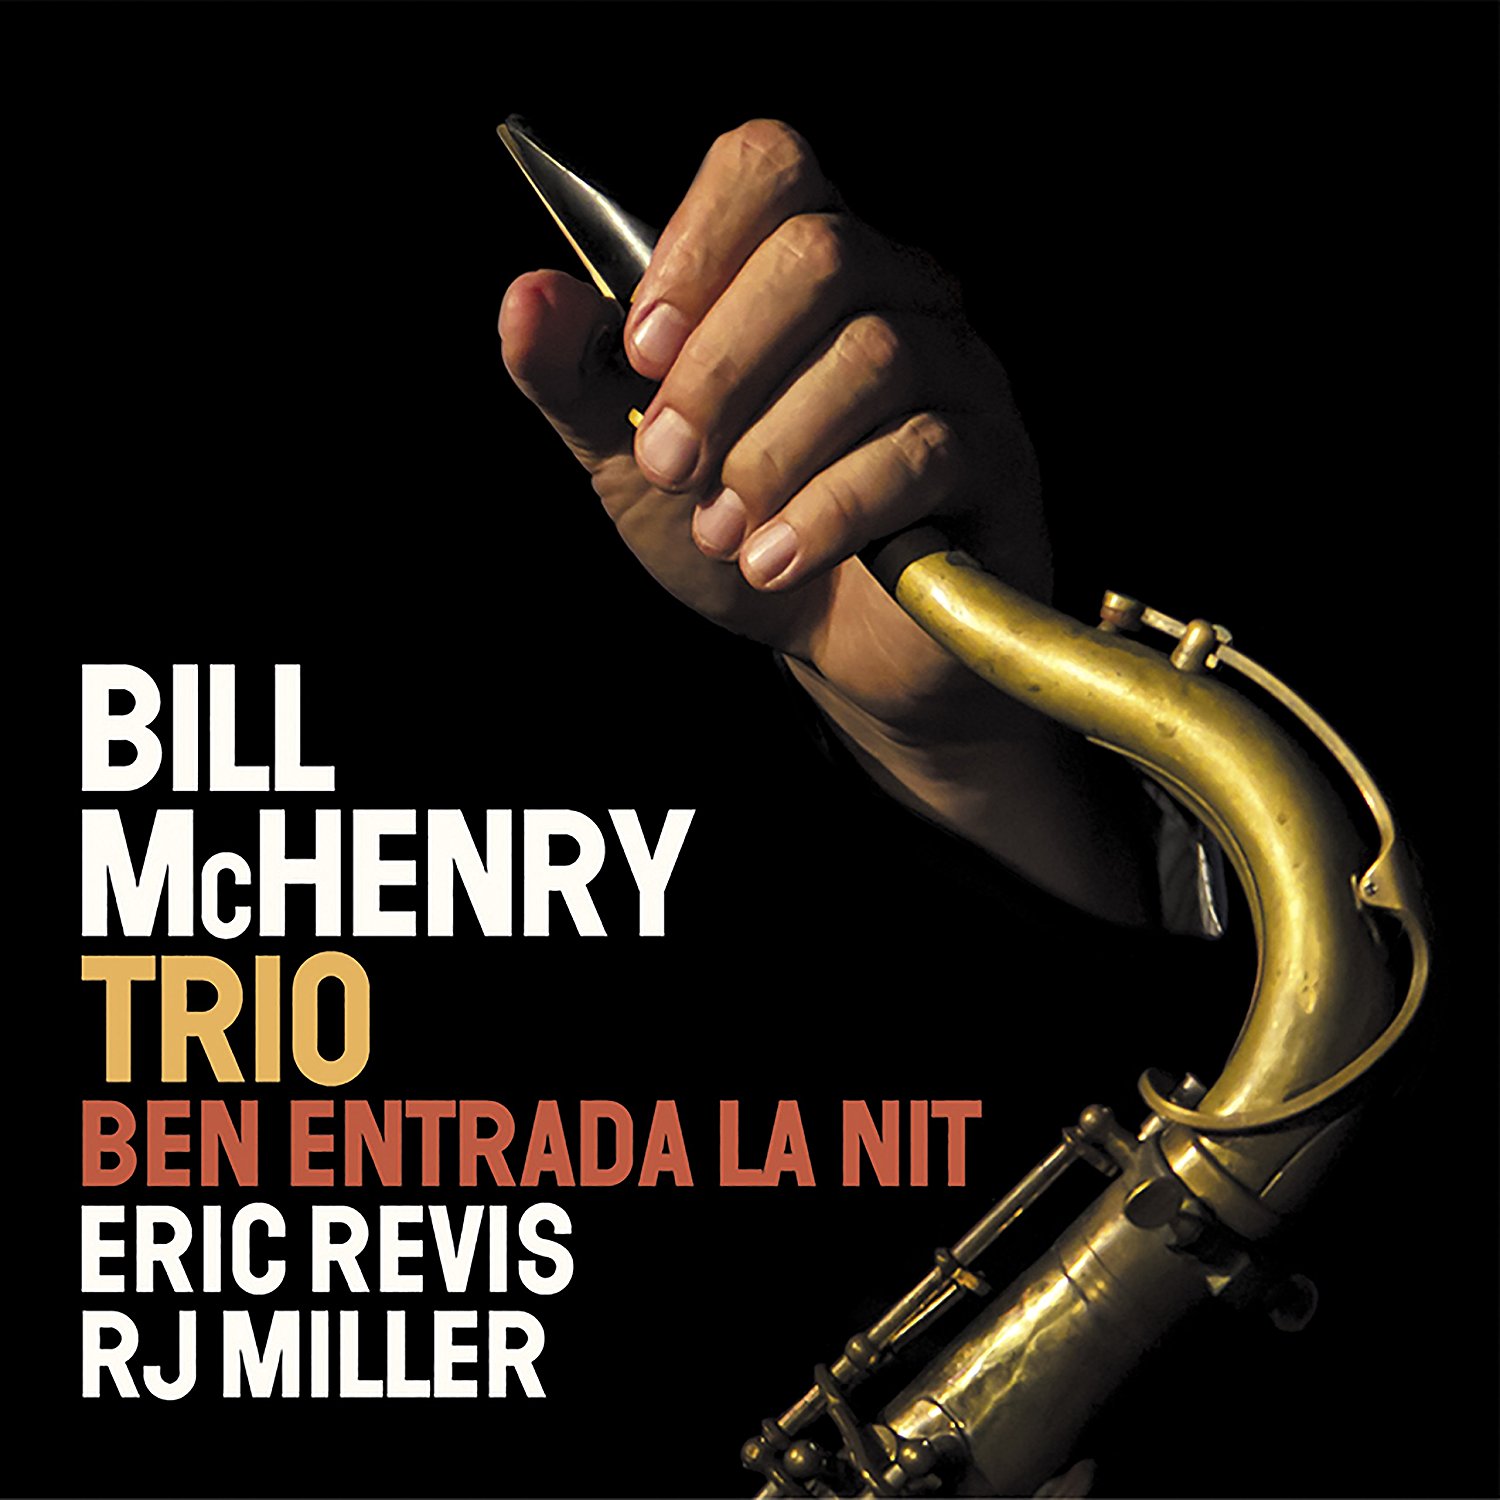 BILL MCHENRY - Bill McHenry Trio : Ben entrada la nit cover 